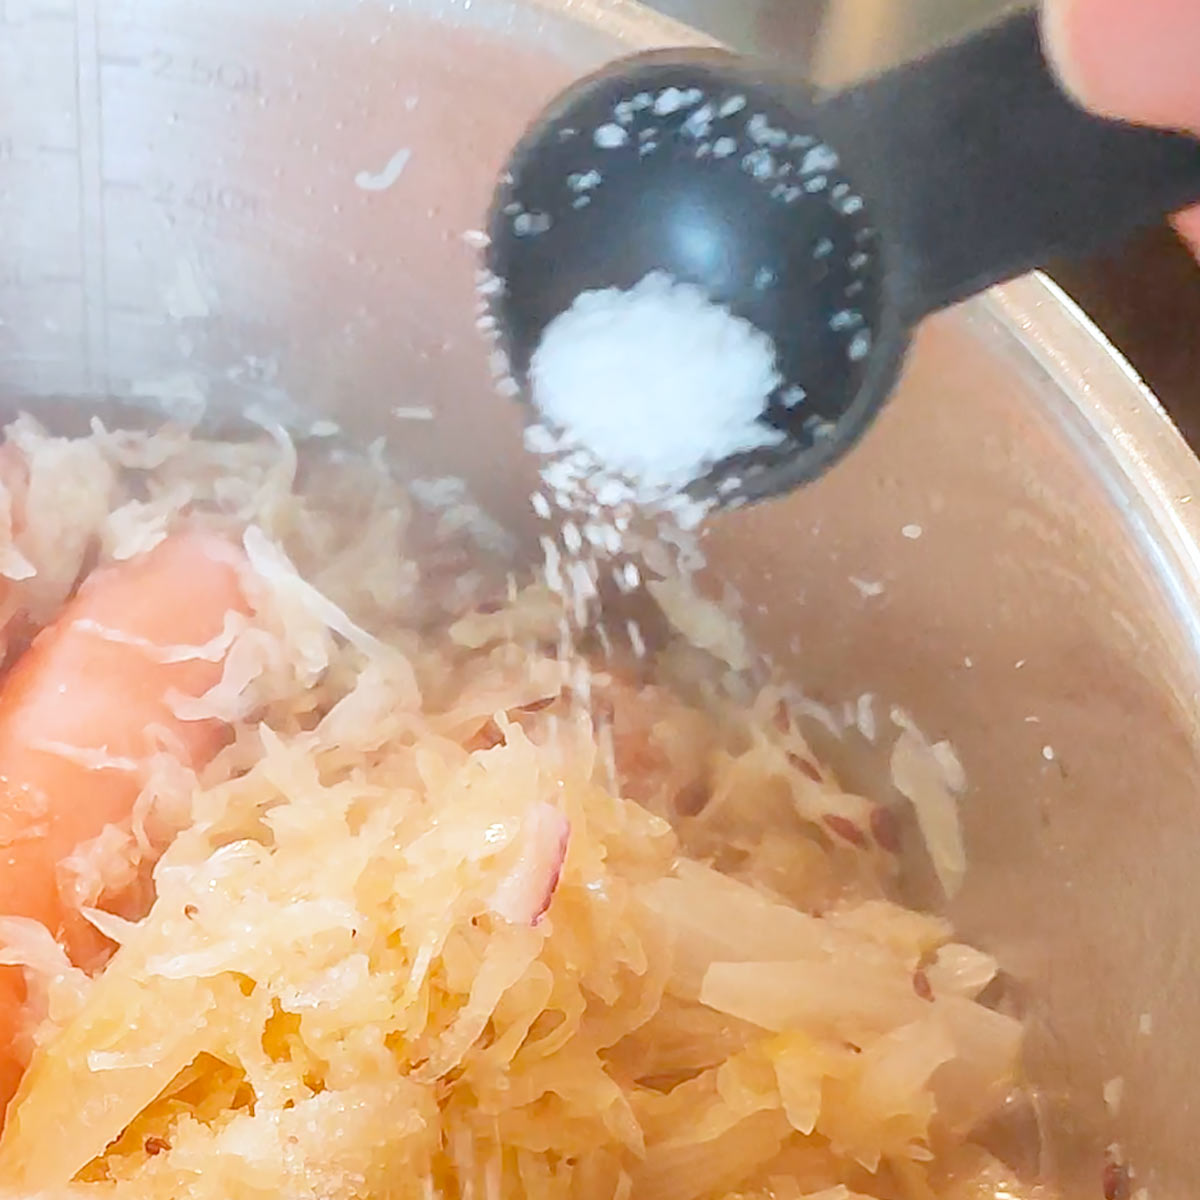 Add salt to the sauerkraut